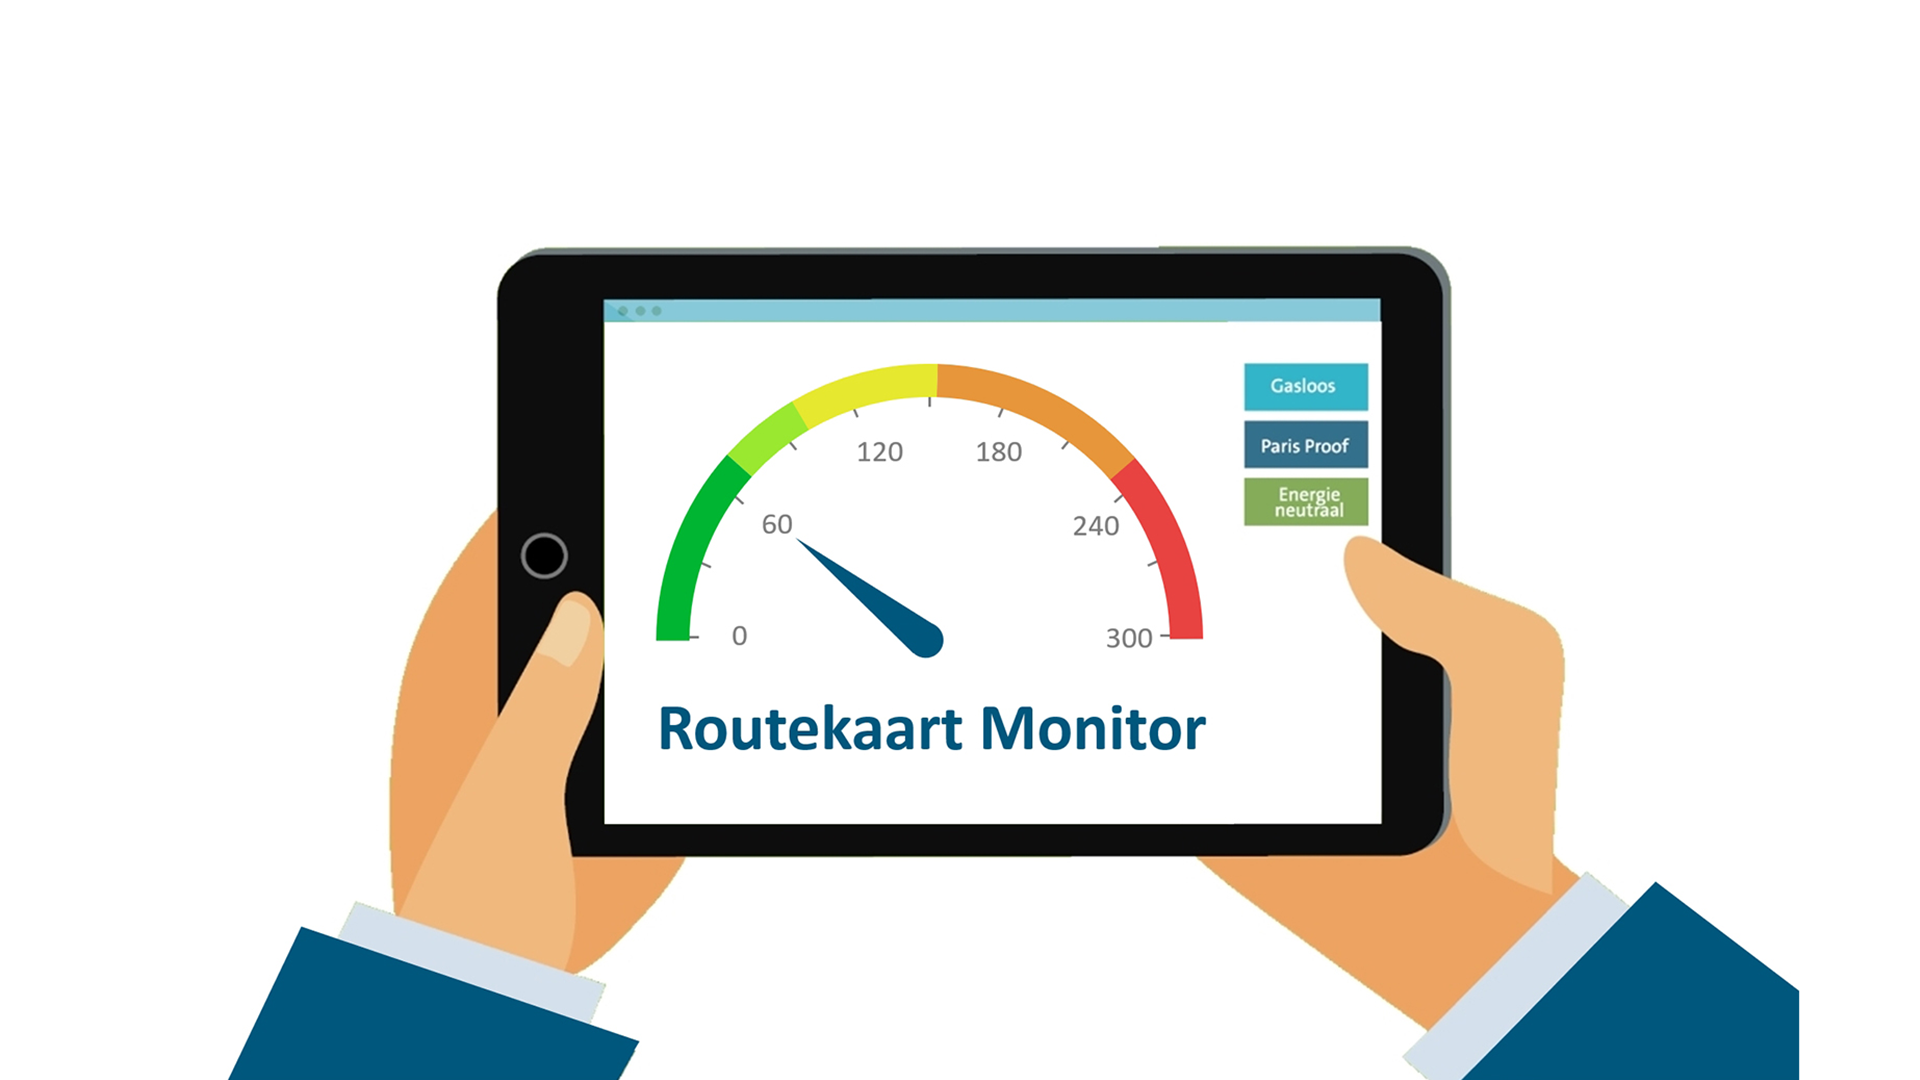 Introductie routekaart monitor: inzicht in energiegebruik op weg naar parijs